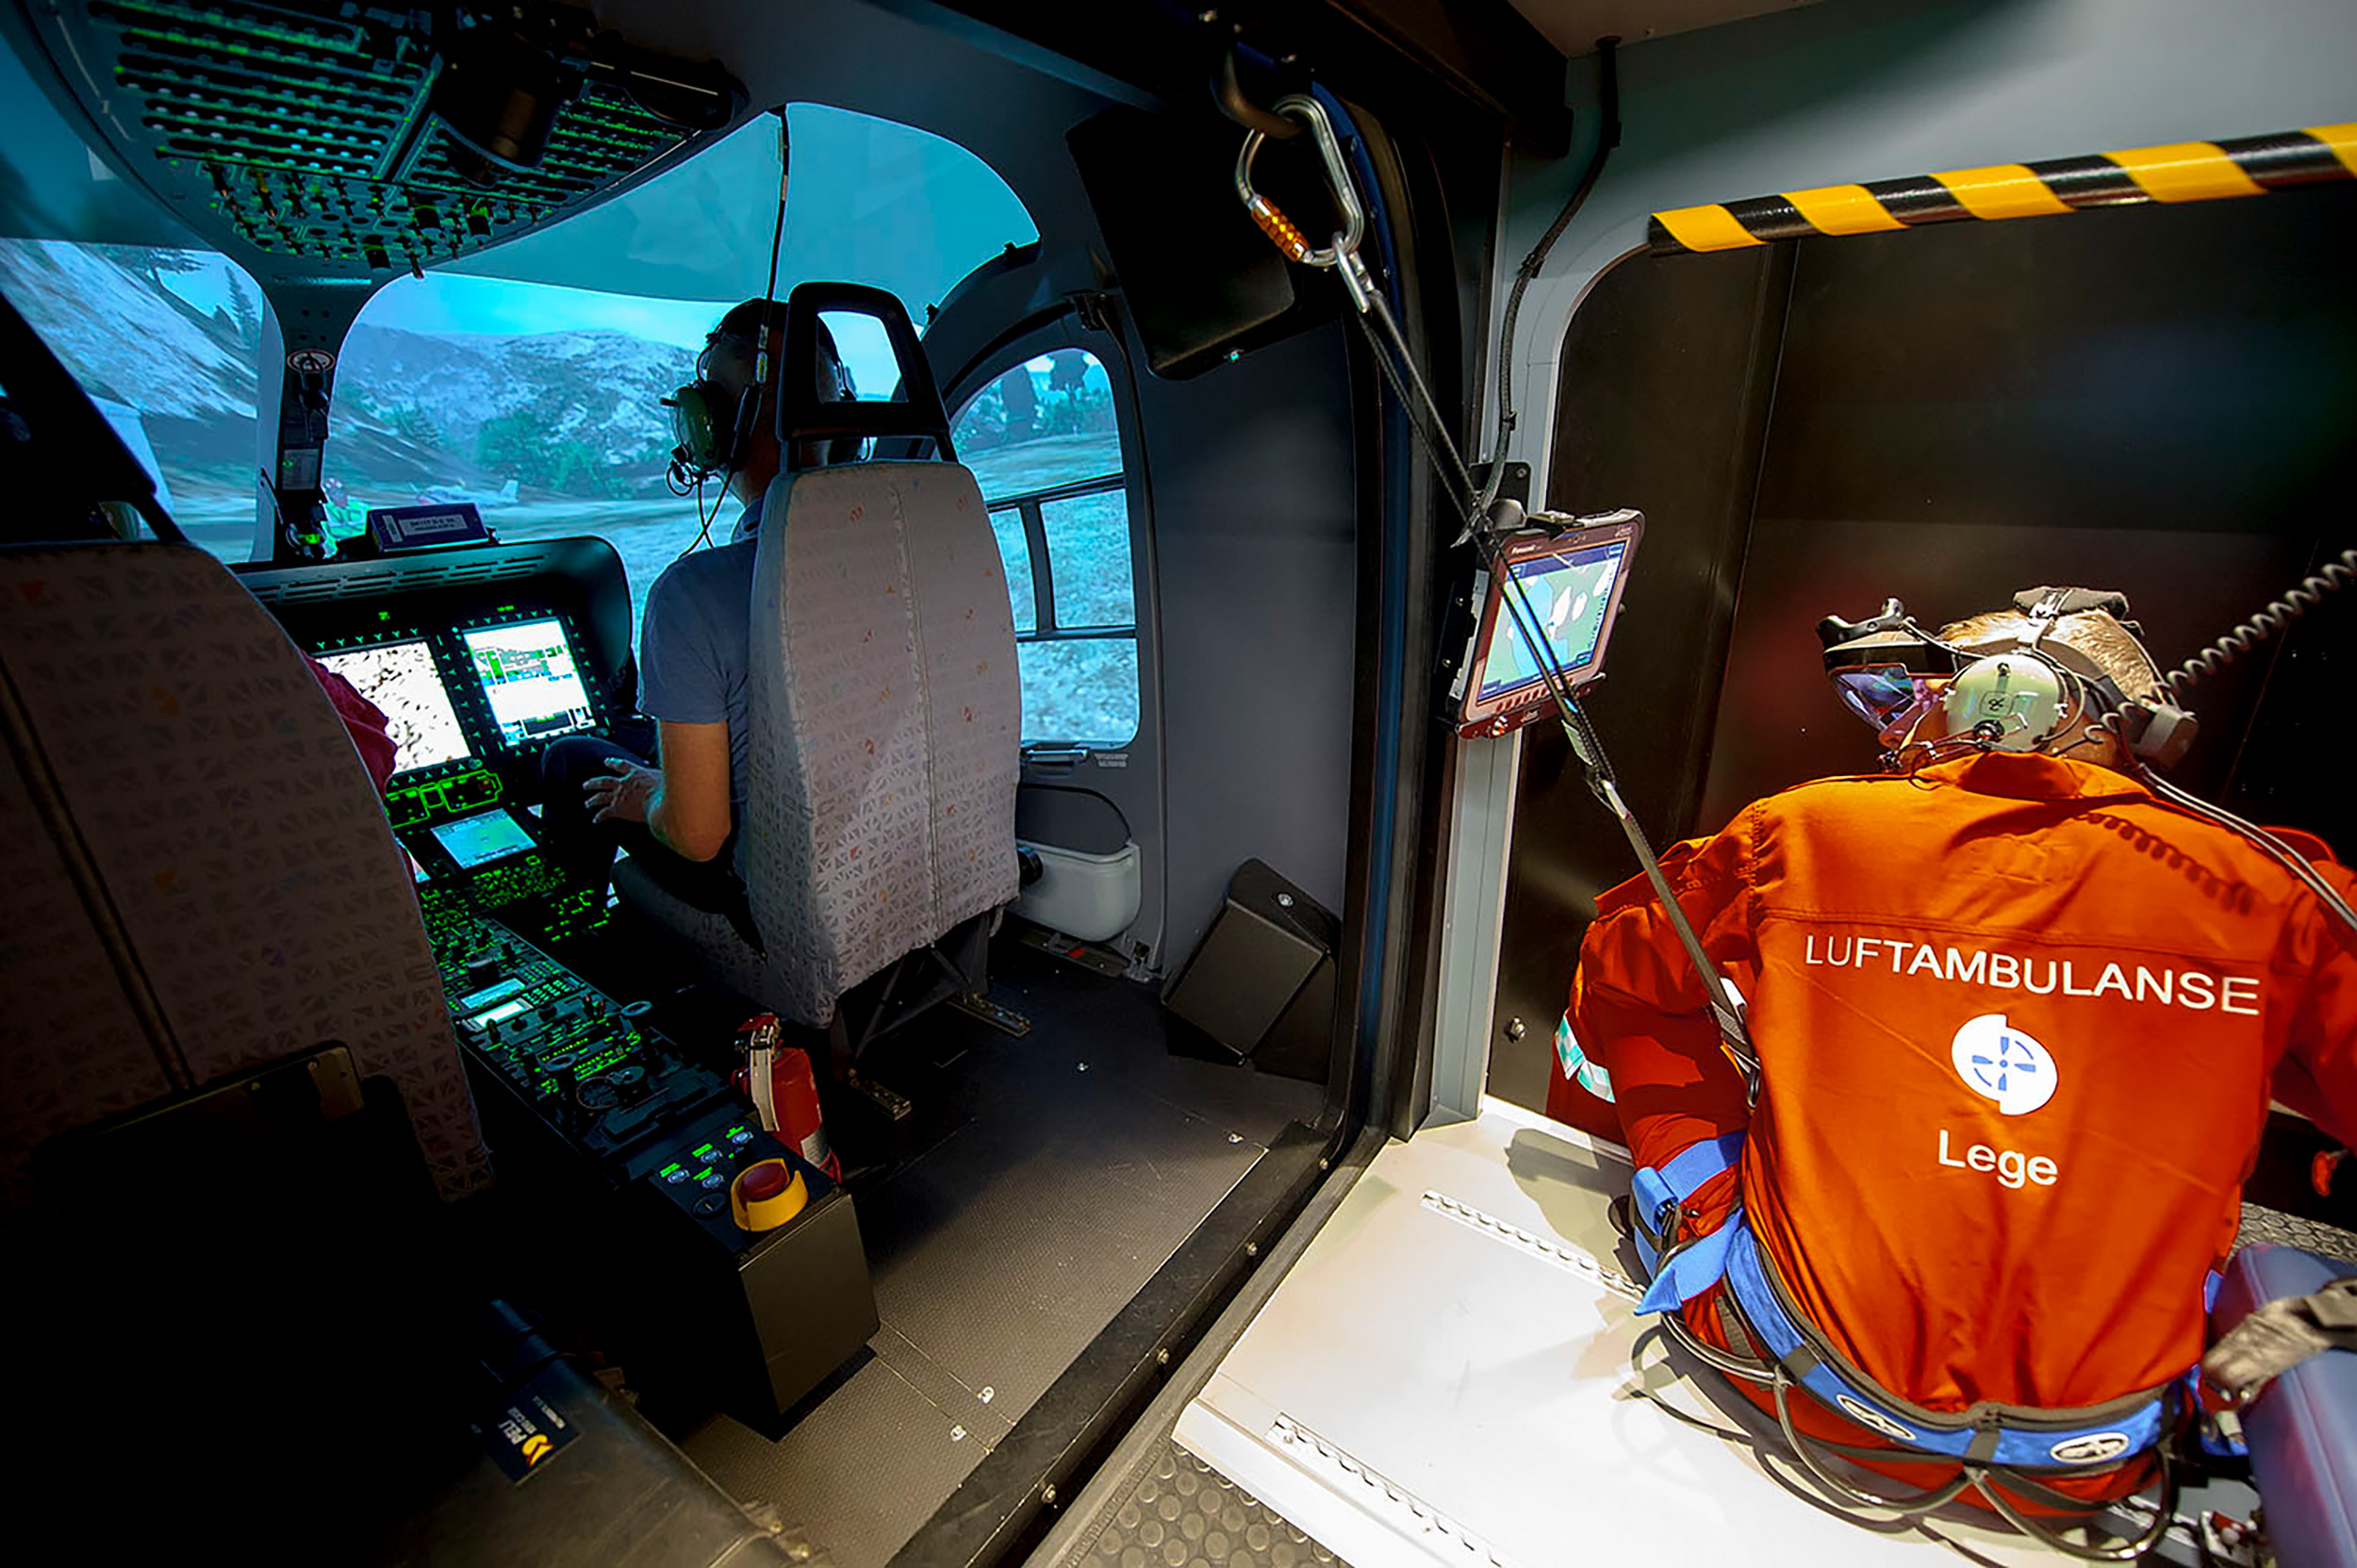 Bilde av personell fra legehelikopteret som trener på å fly helikopter i simulator. Simulatortrening gir crewet mulighet til å øve på uventede situasjoner